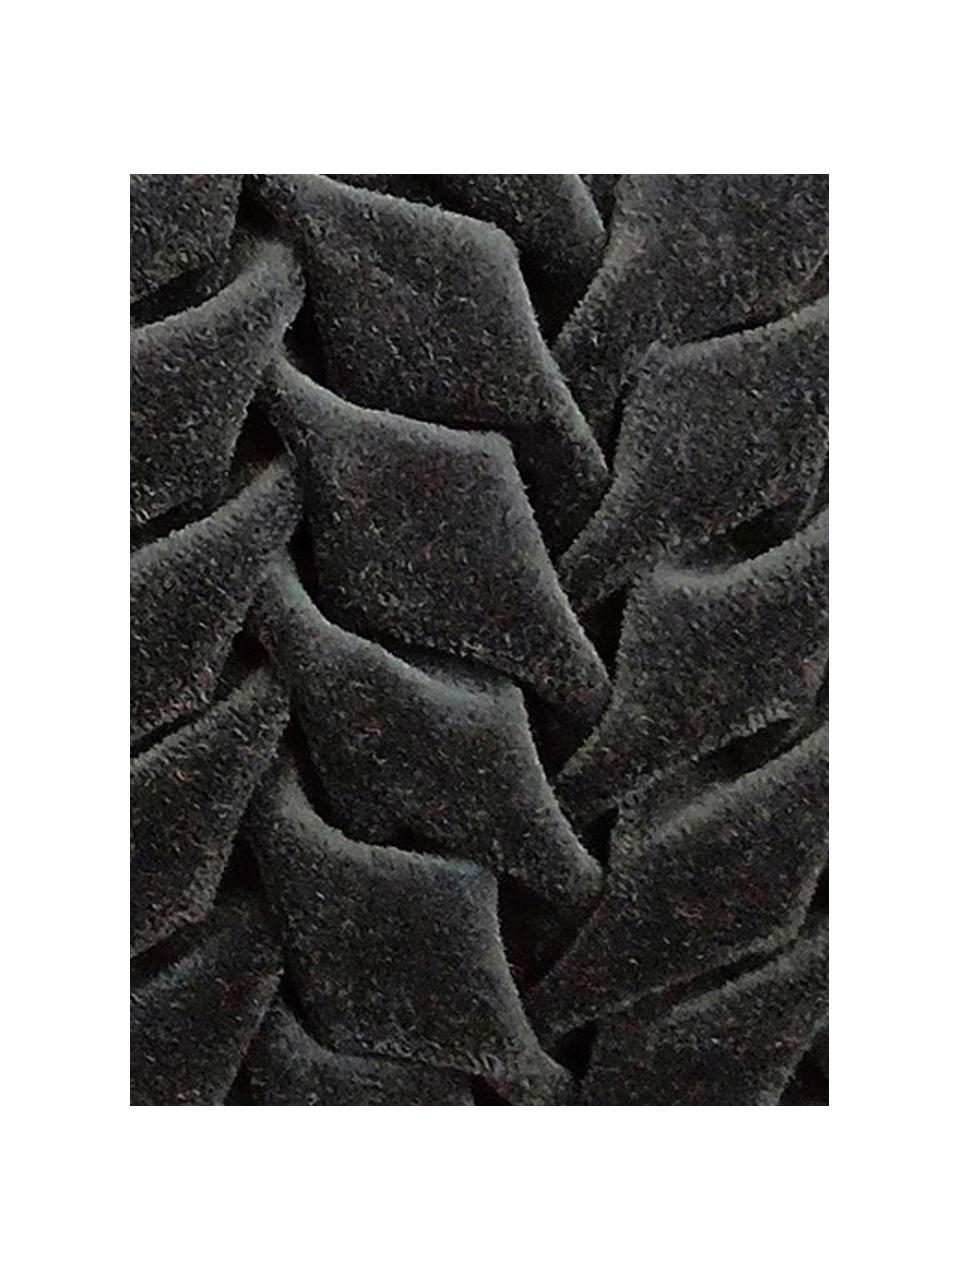 Samt-Kissen Smock in Anthrazit mit geraffter Oberfläche, mit Inlett, Bezug: 100% Baumwollsamt, Schwarz, 30 x 50 cm